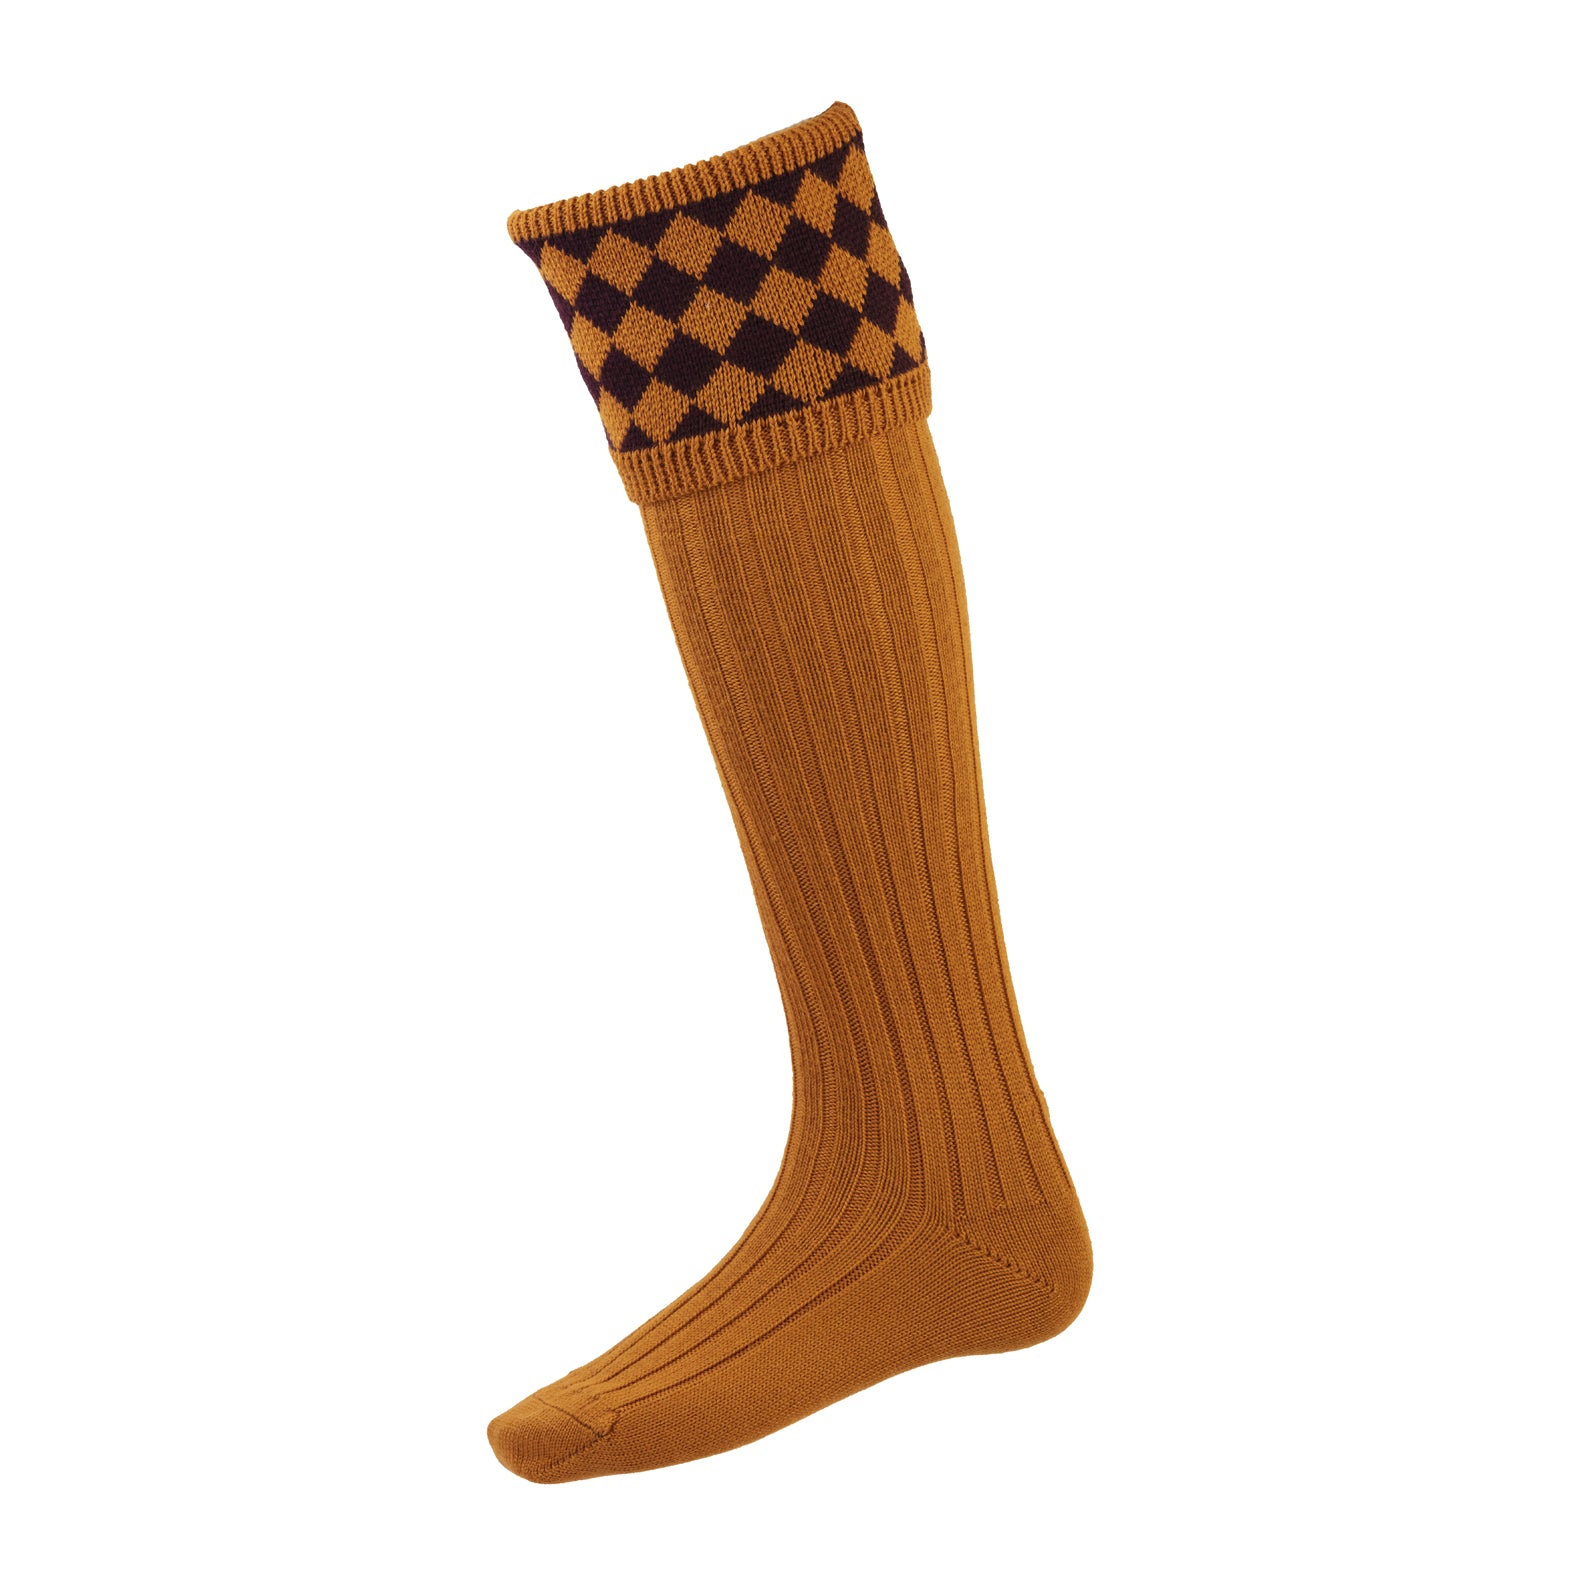 House of Cheviot Chessboard Socks